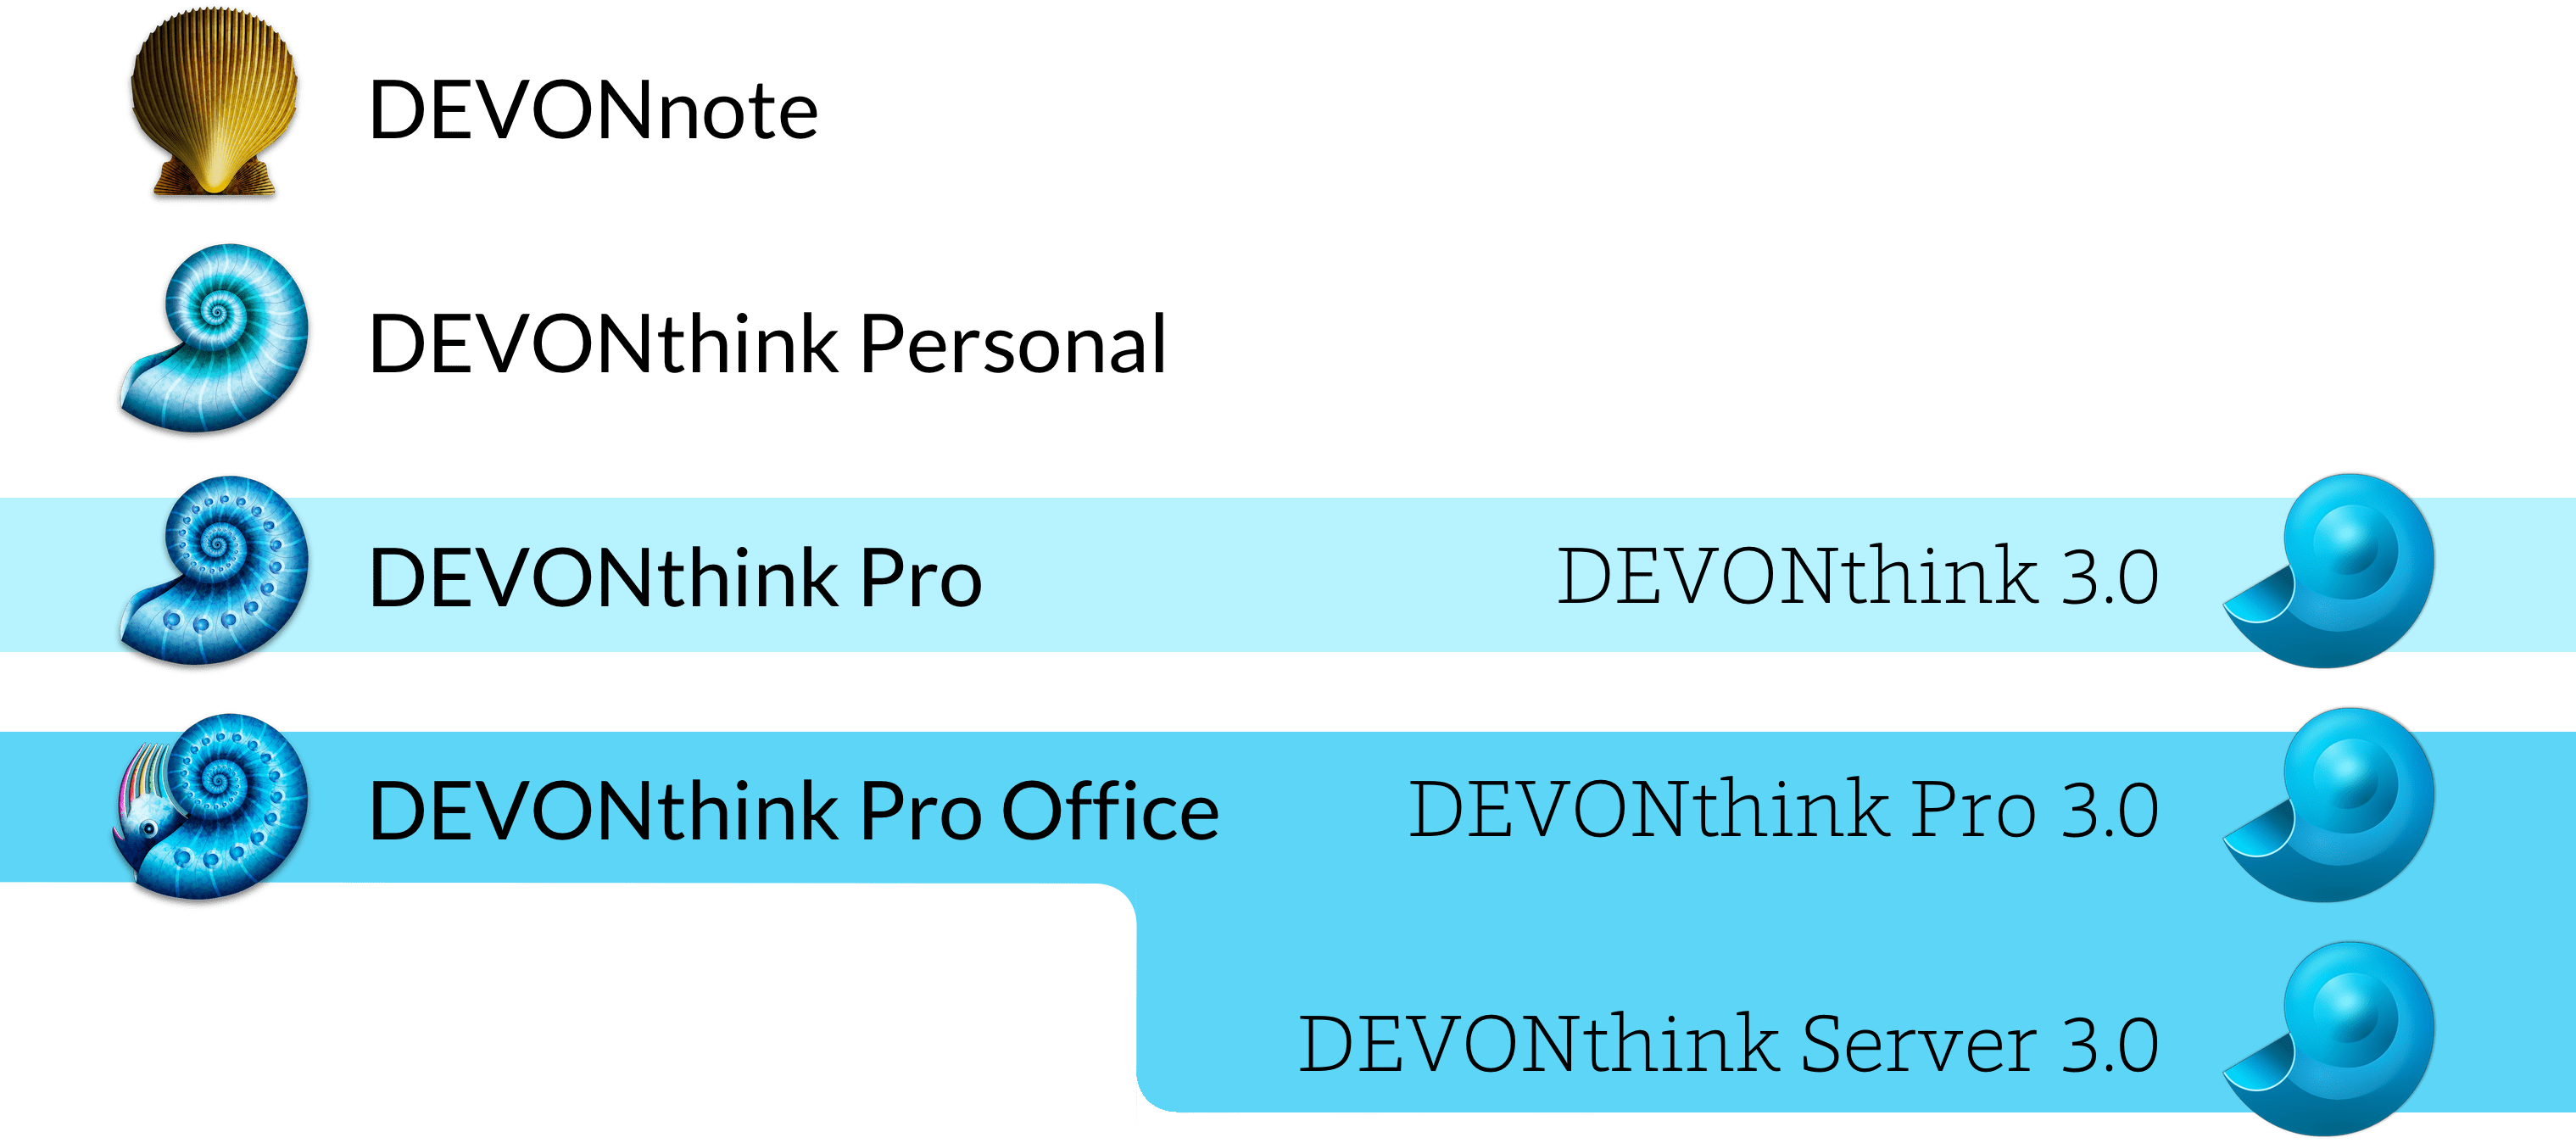 Confronto tra versioni di DEVONthink 2 e 3